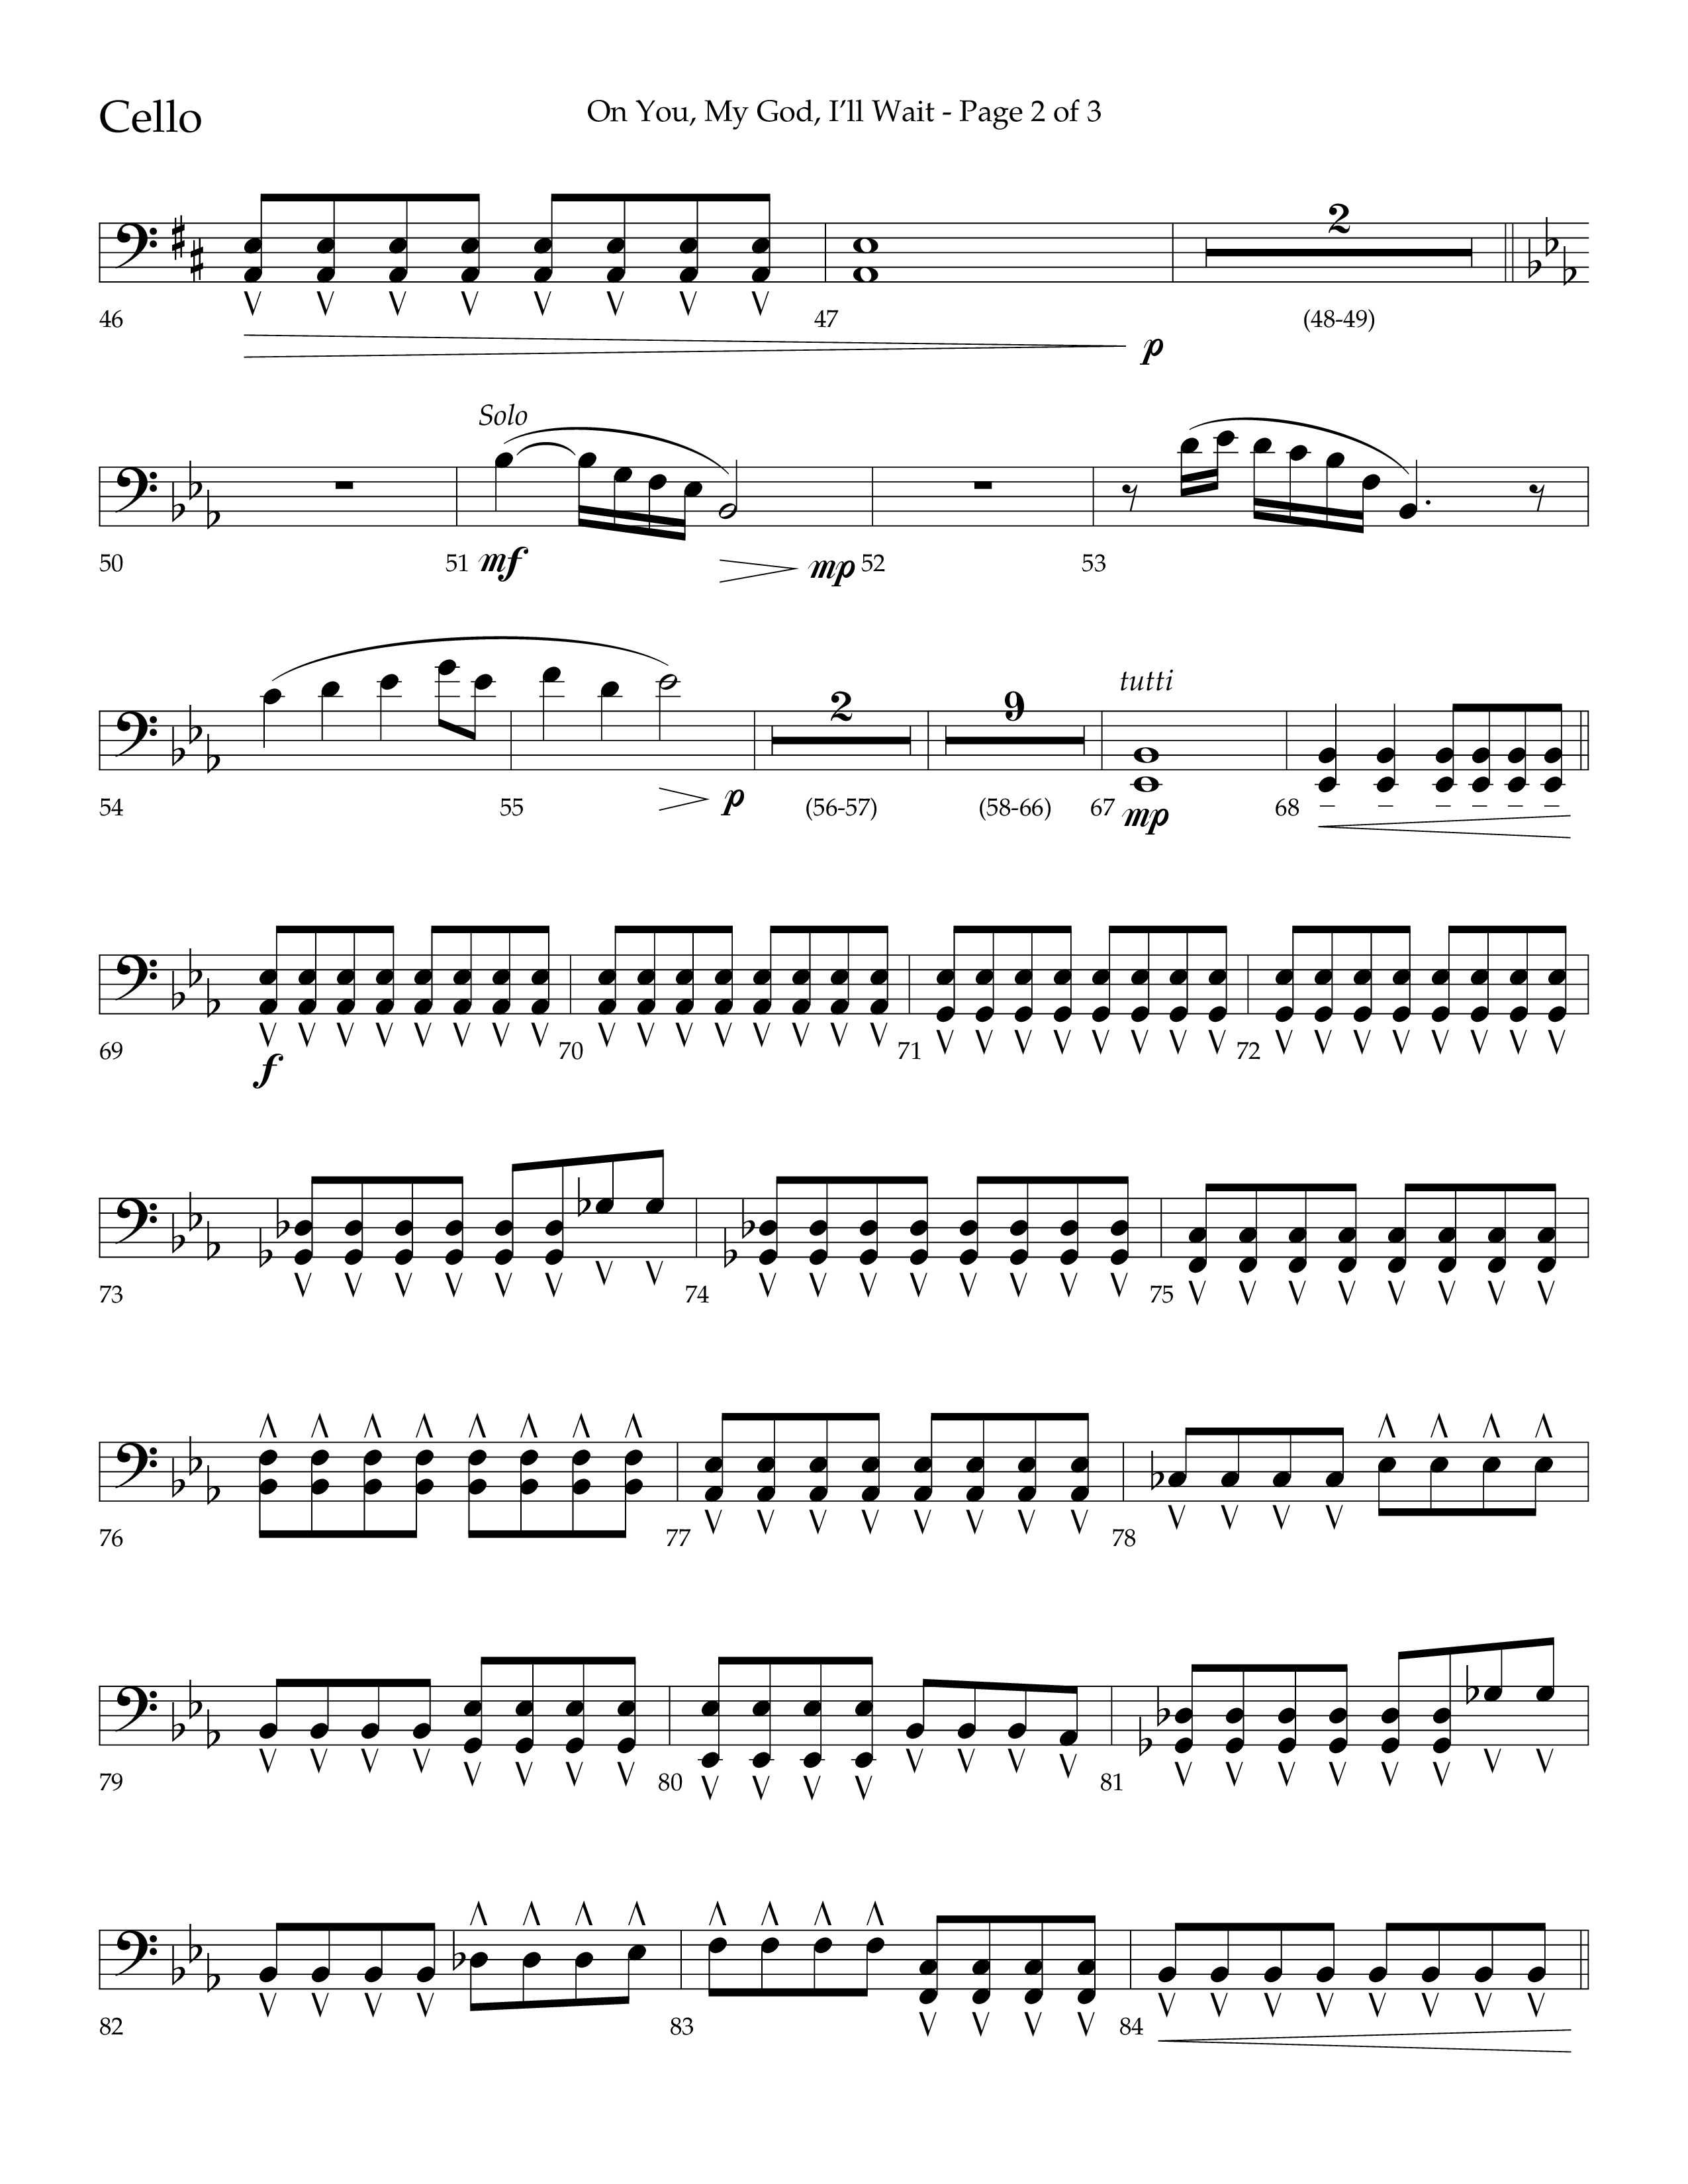 On You My God I'll Wait (Choral Anthem SATB) Cello (Lifeway Choral / Arr. Craig Adams / Arr. Mike Harland)